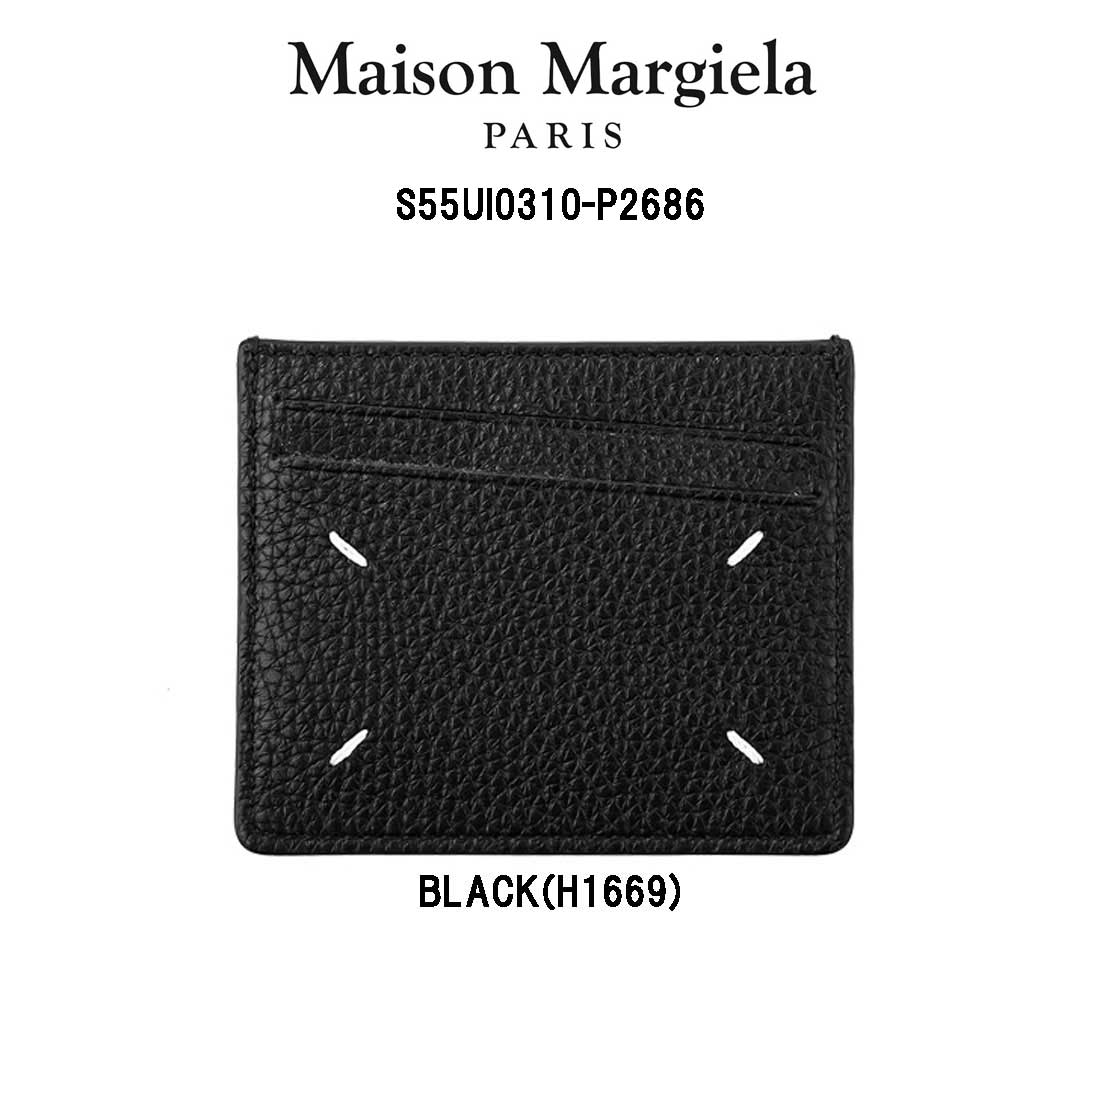 店内全品対象 送料無料 プレゼント ギフトにおすすめ Maison Margiela メゾンマルジェラ カーフレザー S55UI0310-P2686 定期入れ 驚きの価格が実現 カードケース クレジット